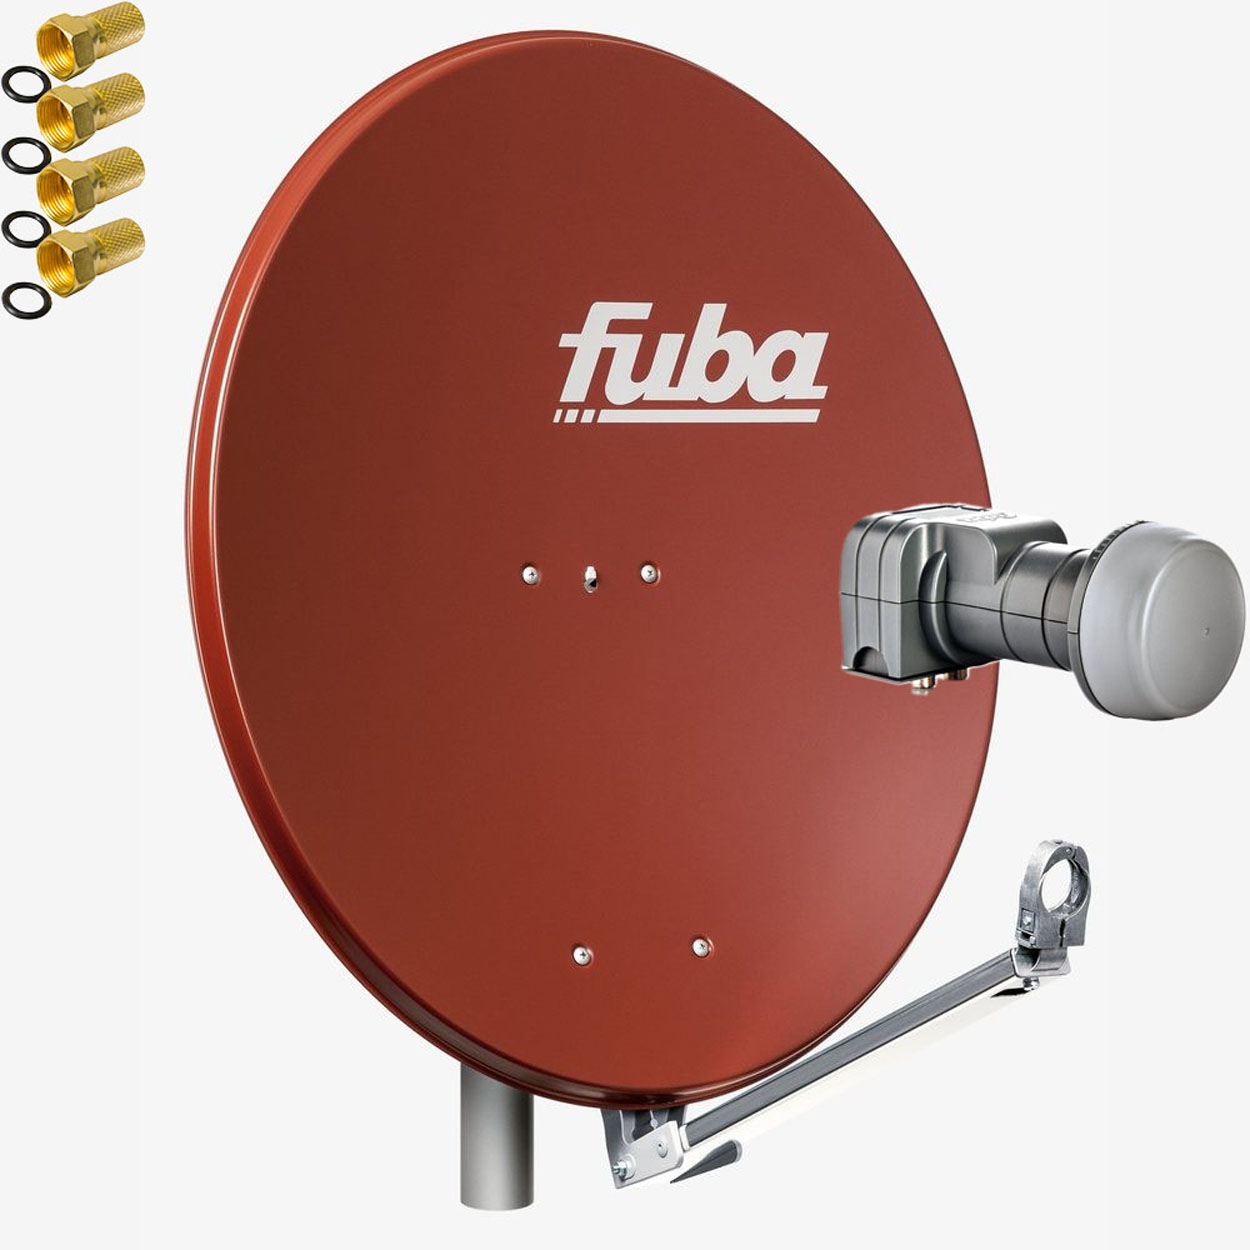 FUBA DAL 802 217 Twin Twin LNB R LNB) Anlage 2 LMB Anlage Satelliten DEK Sat Sat Teilnehmer cm, Schüssel (80